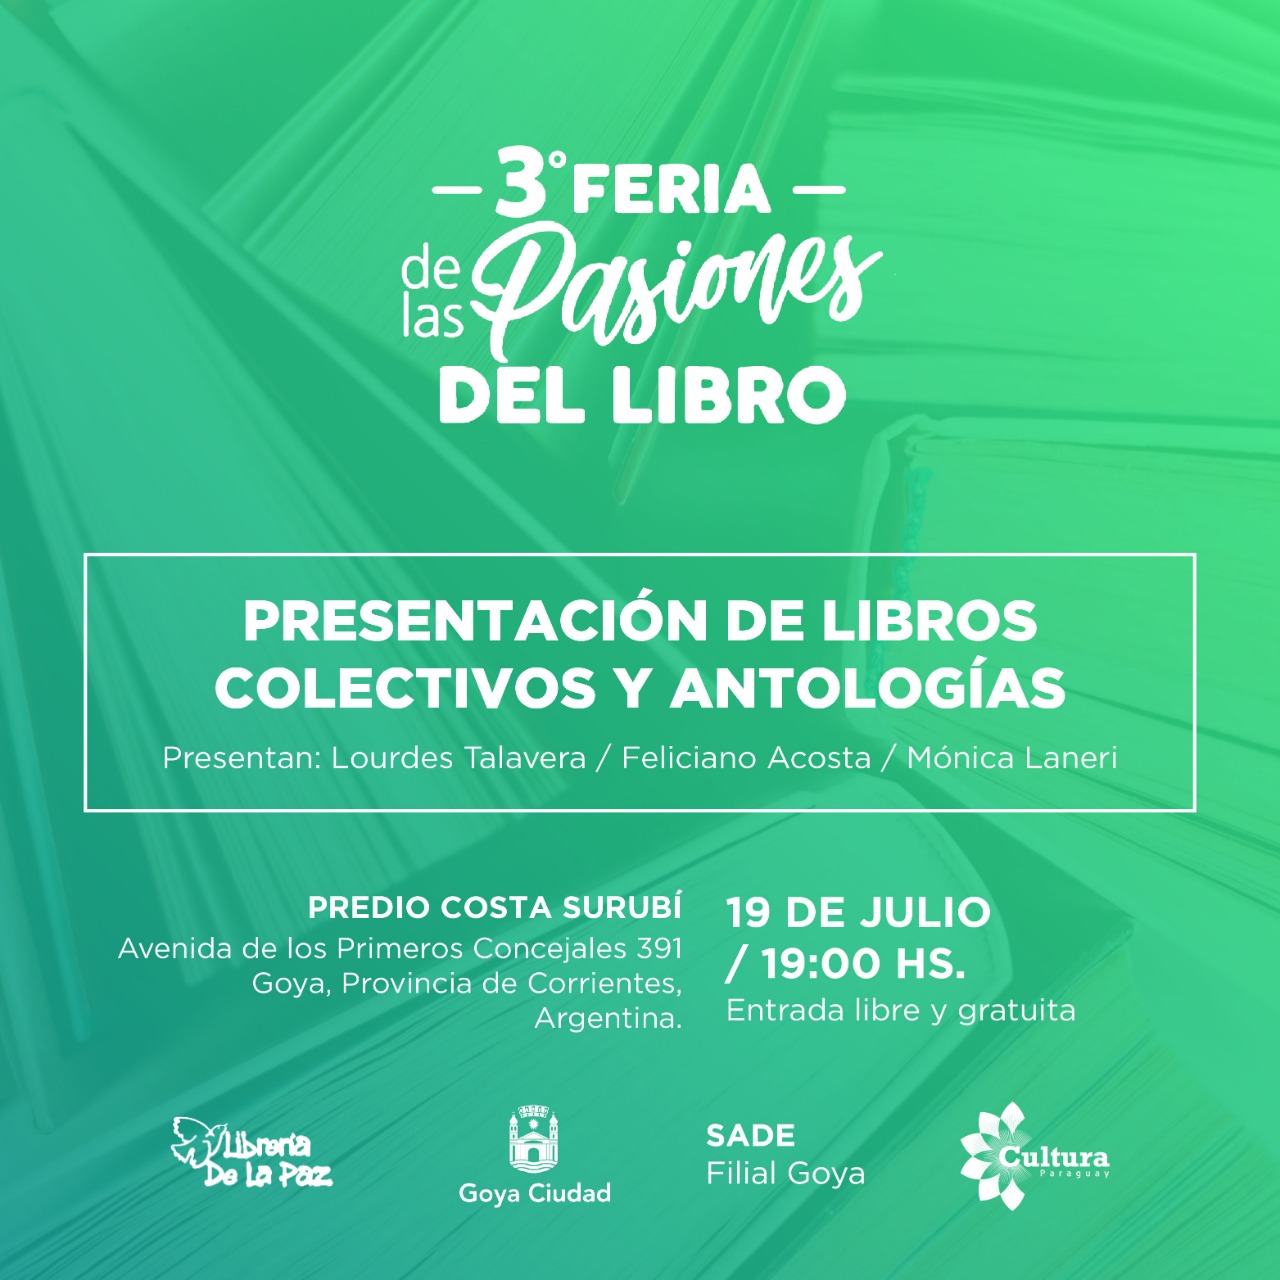 Paraguay expondrá la literatura nacional en la Feria de las Pasiones del Libro de Goya imagen